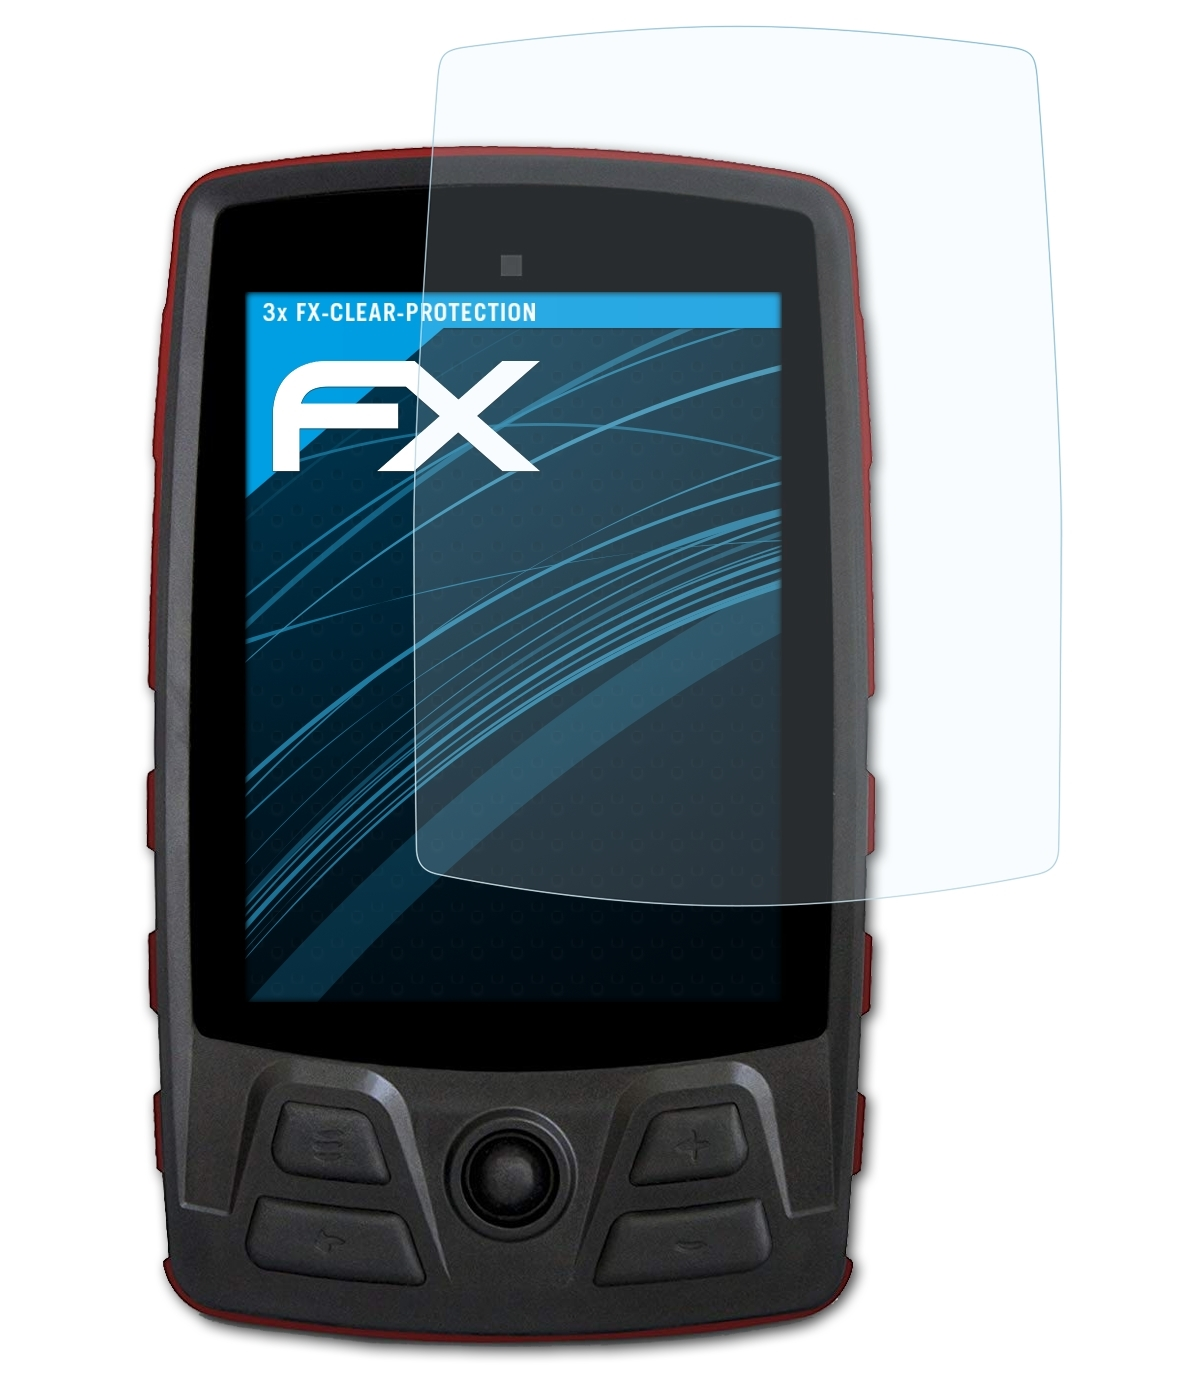 ATFOLIX 3x FX-Clear Displayschutz(für TwoNav Motor) Aventura